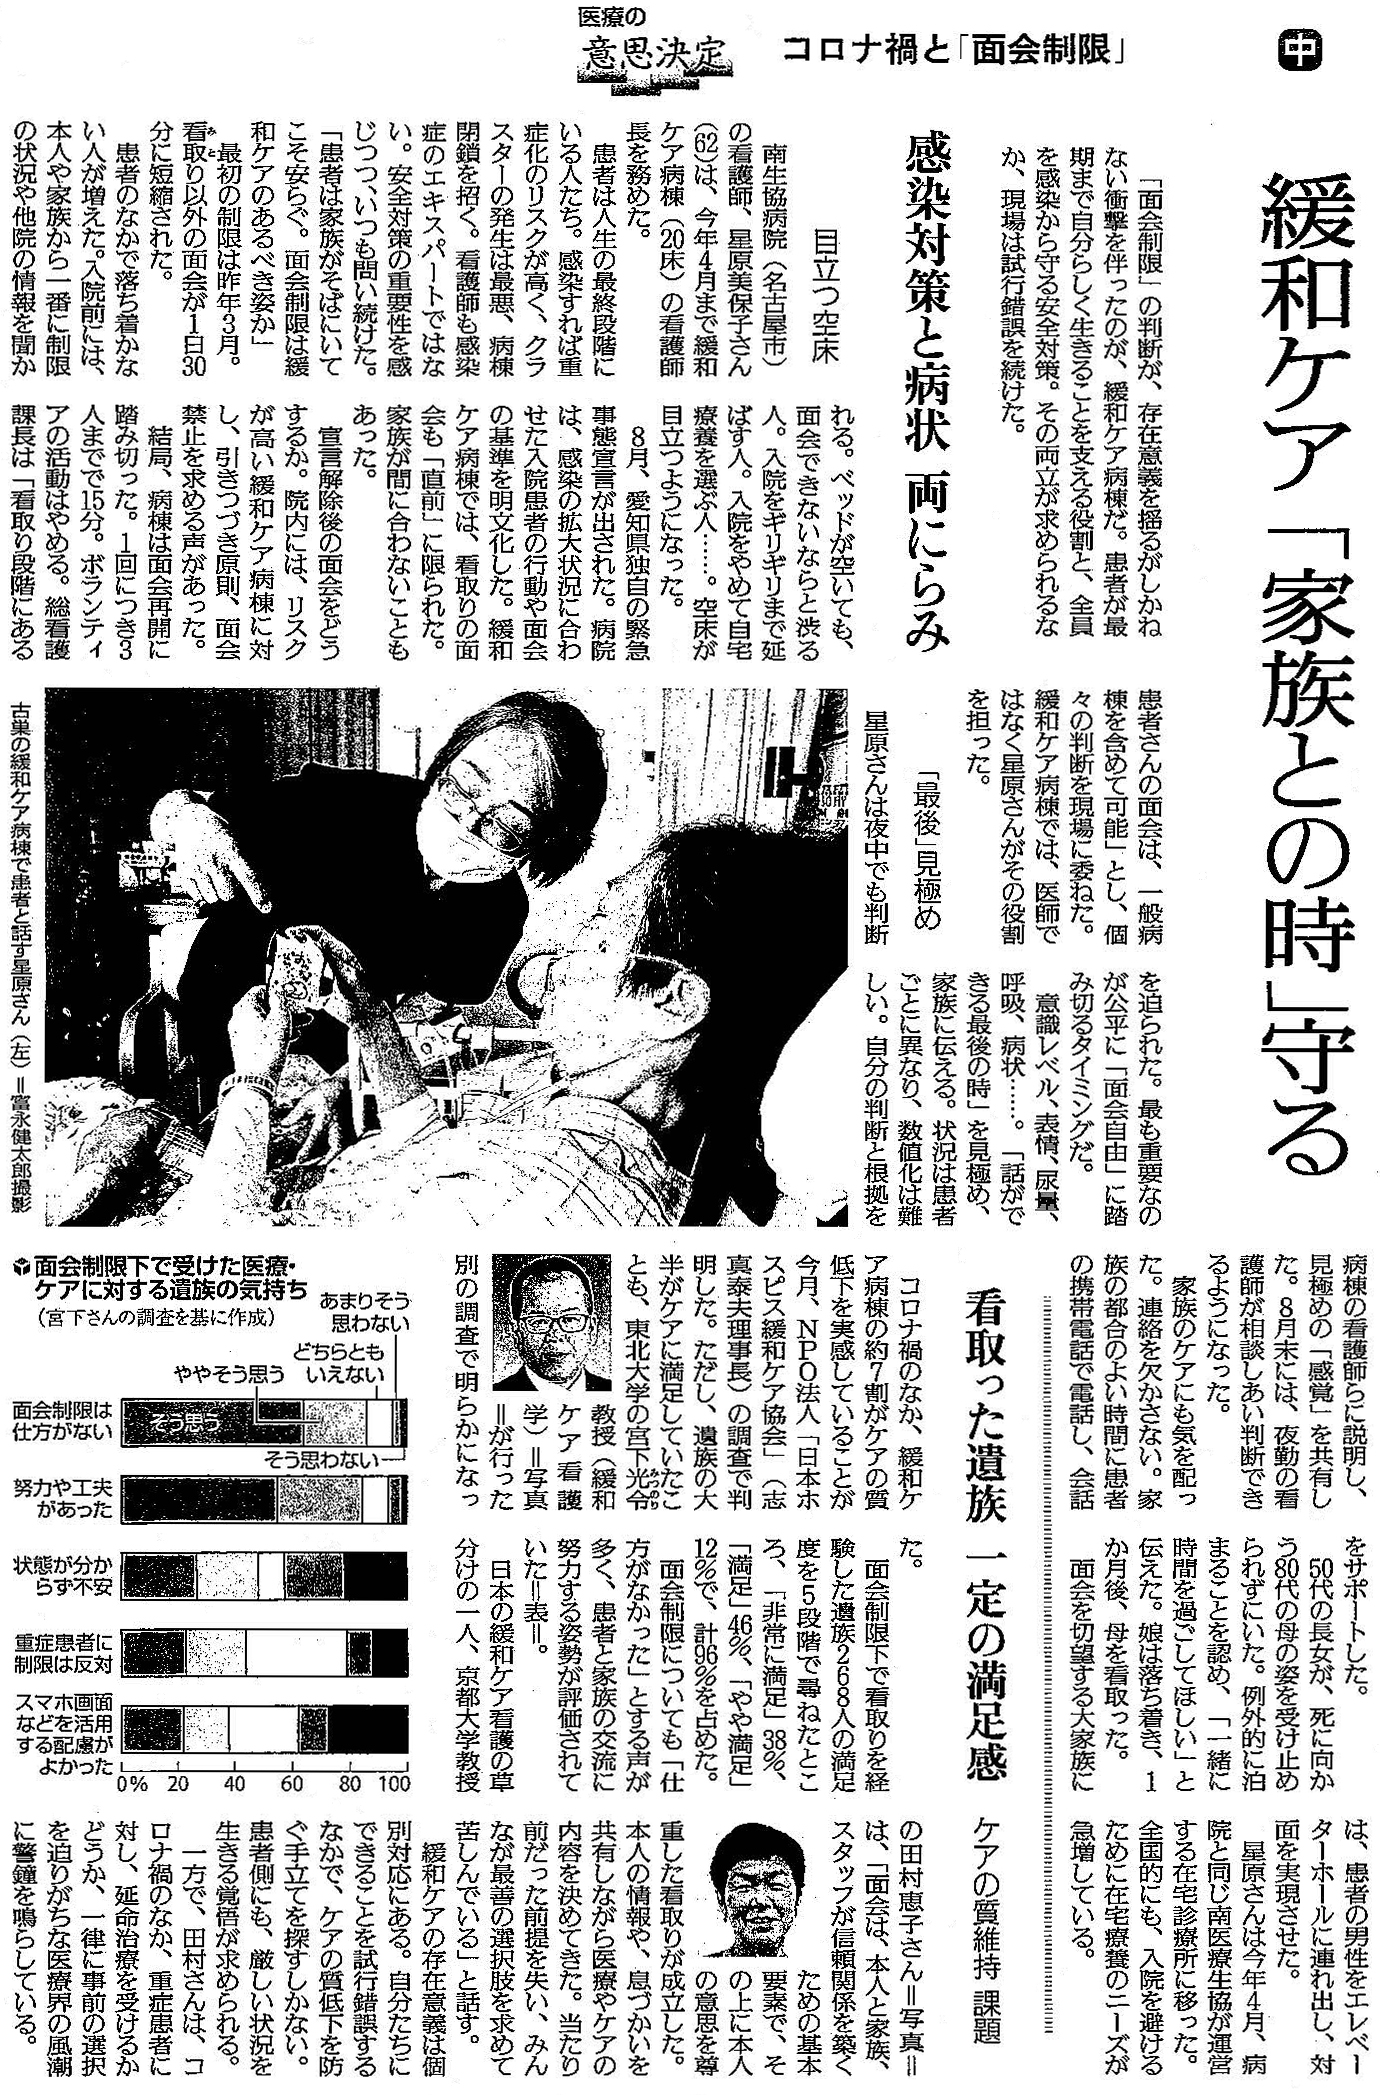 読売新聞 2021年6月29日掲載記事